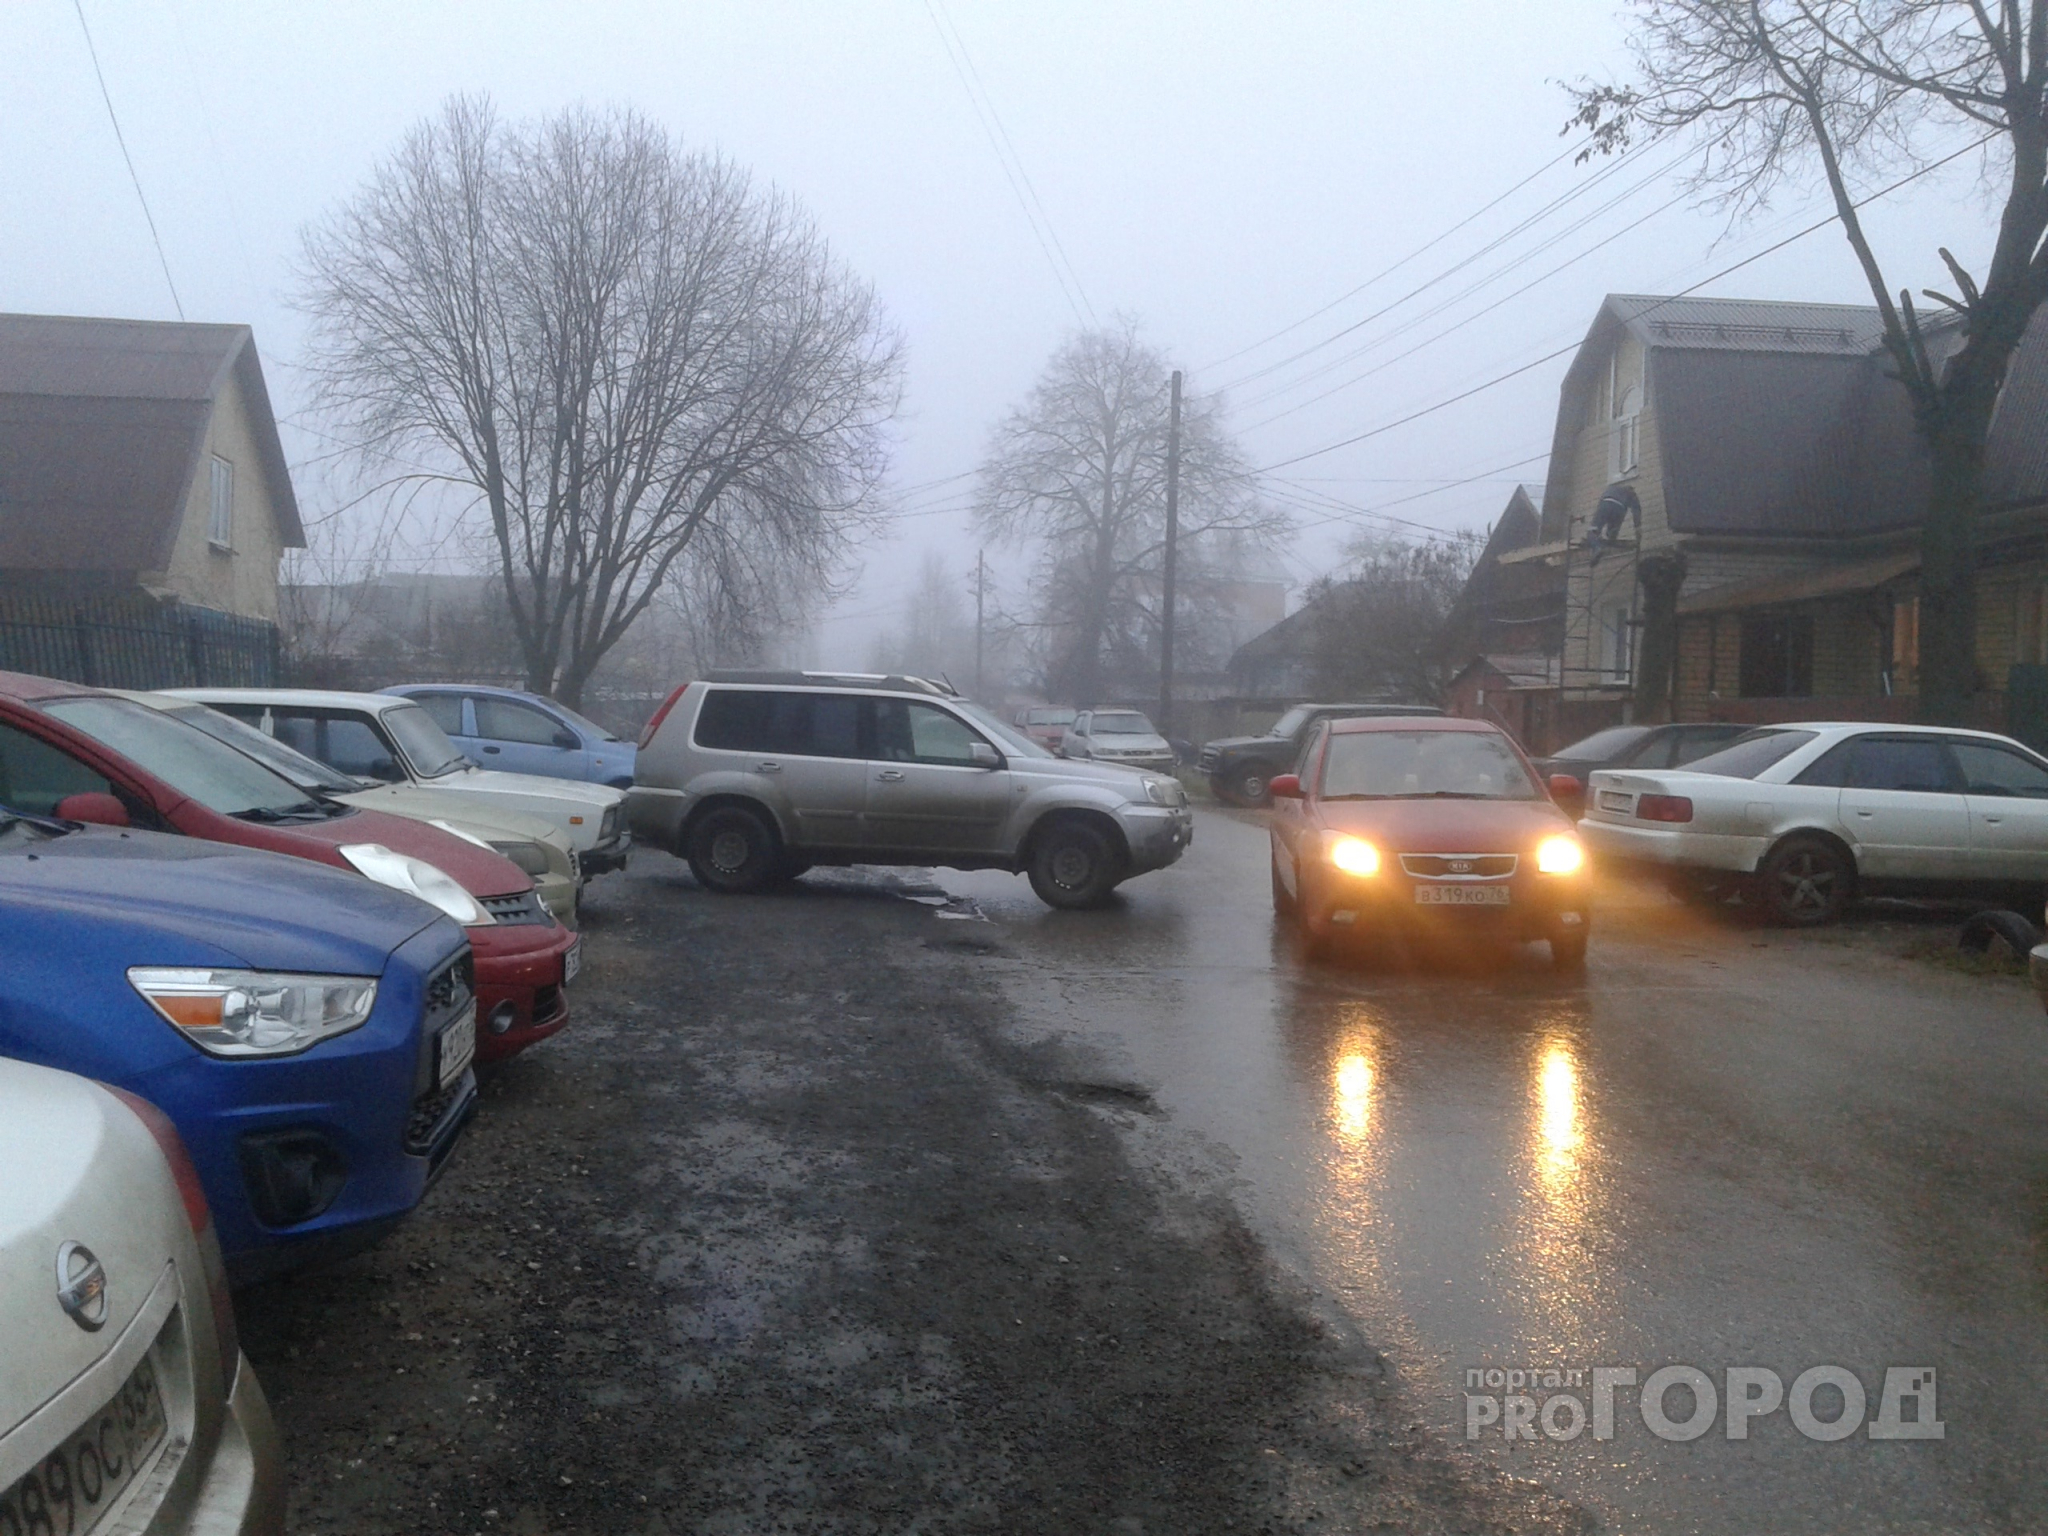 Автомобиль-призрак появился на улице Василисина во Владимире